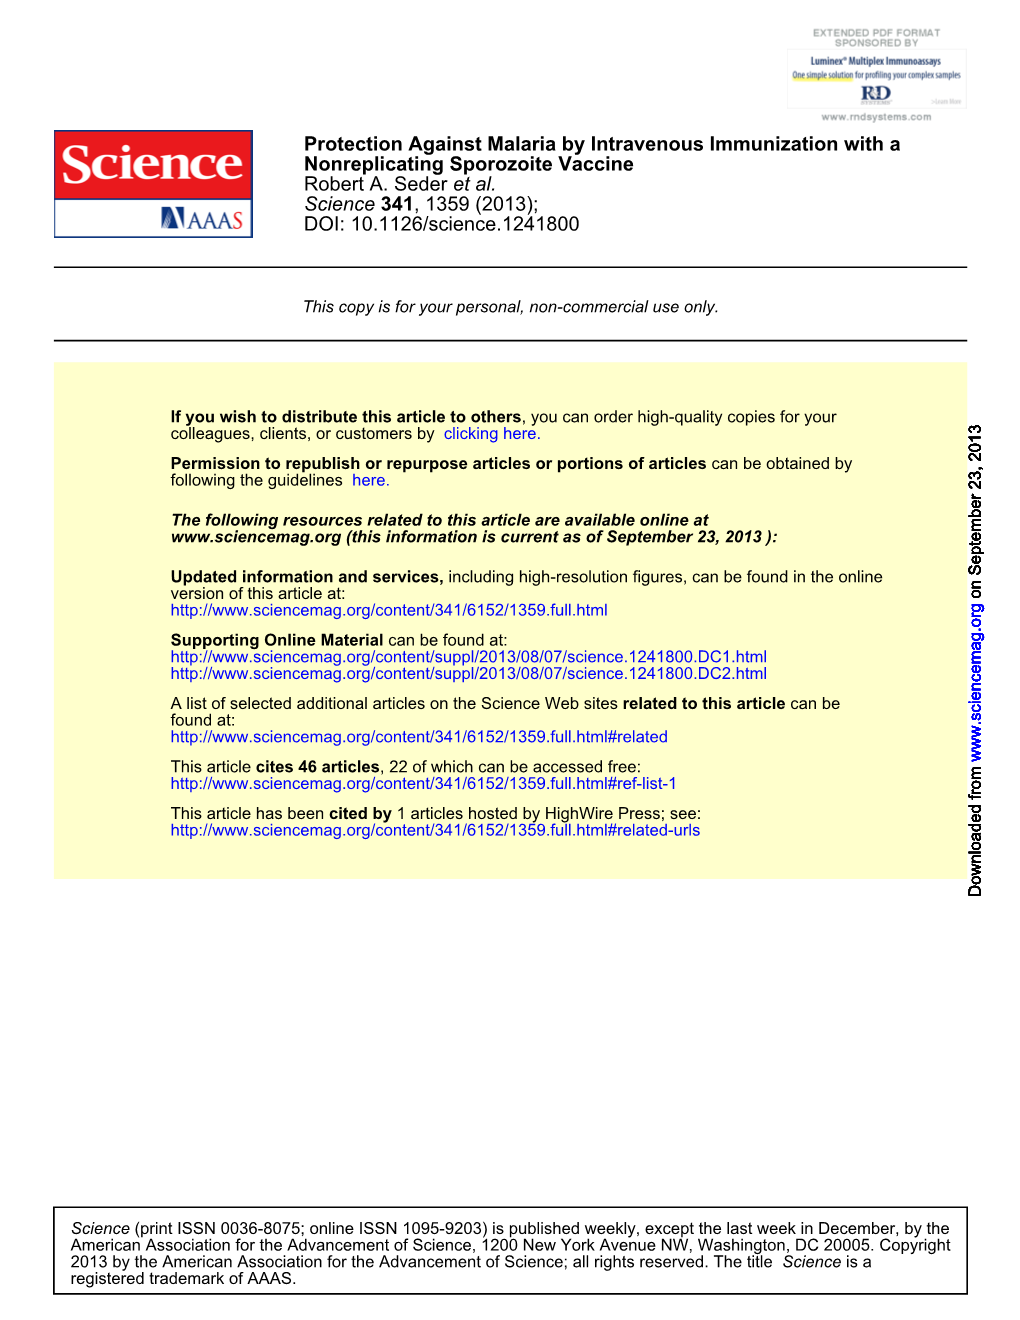 Seder-2013-Science-Article